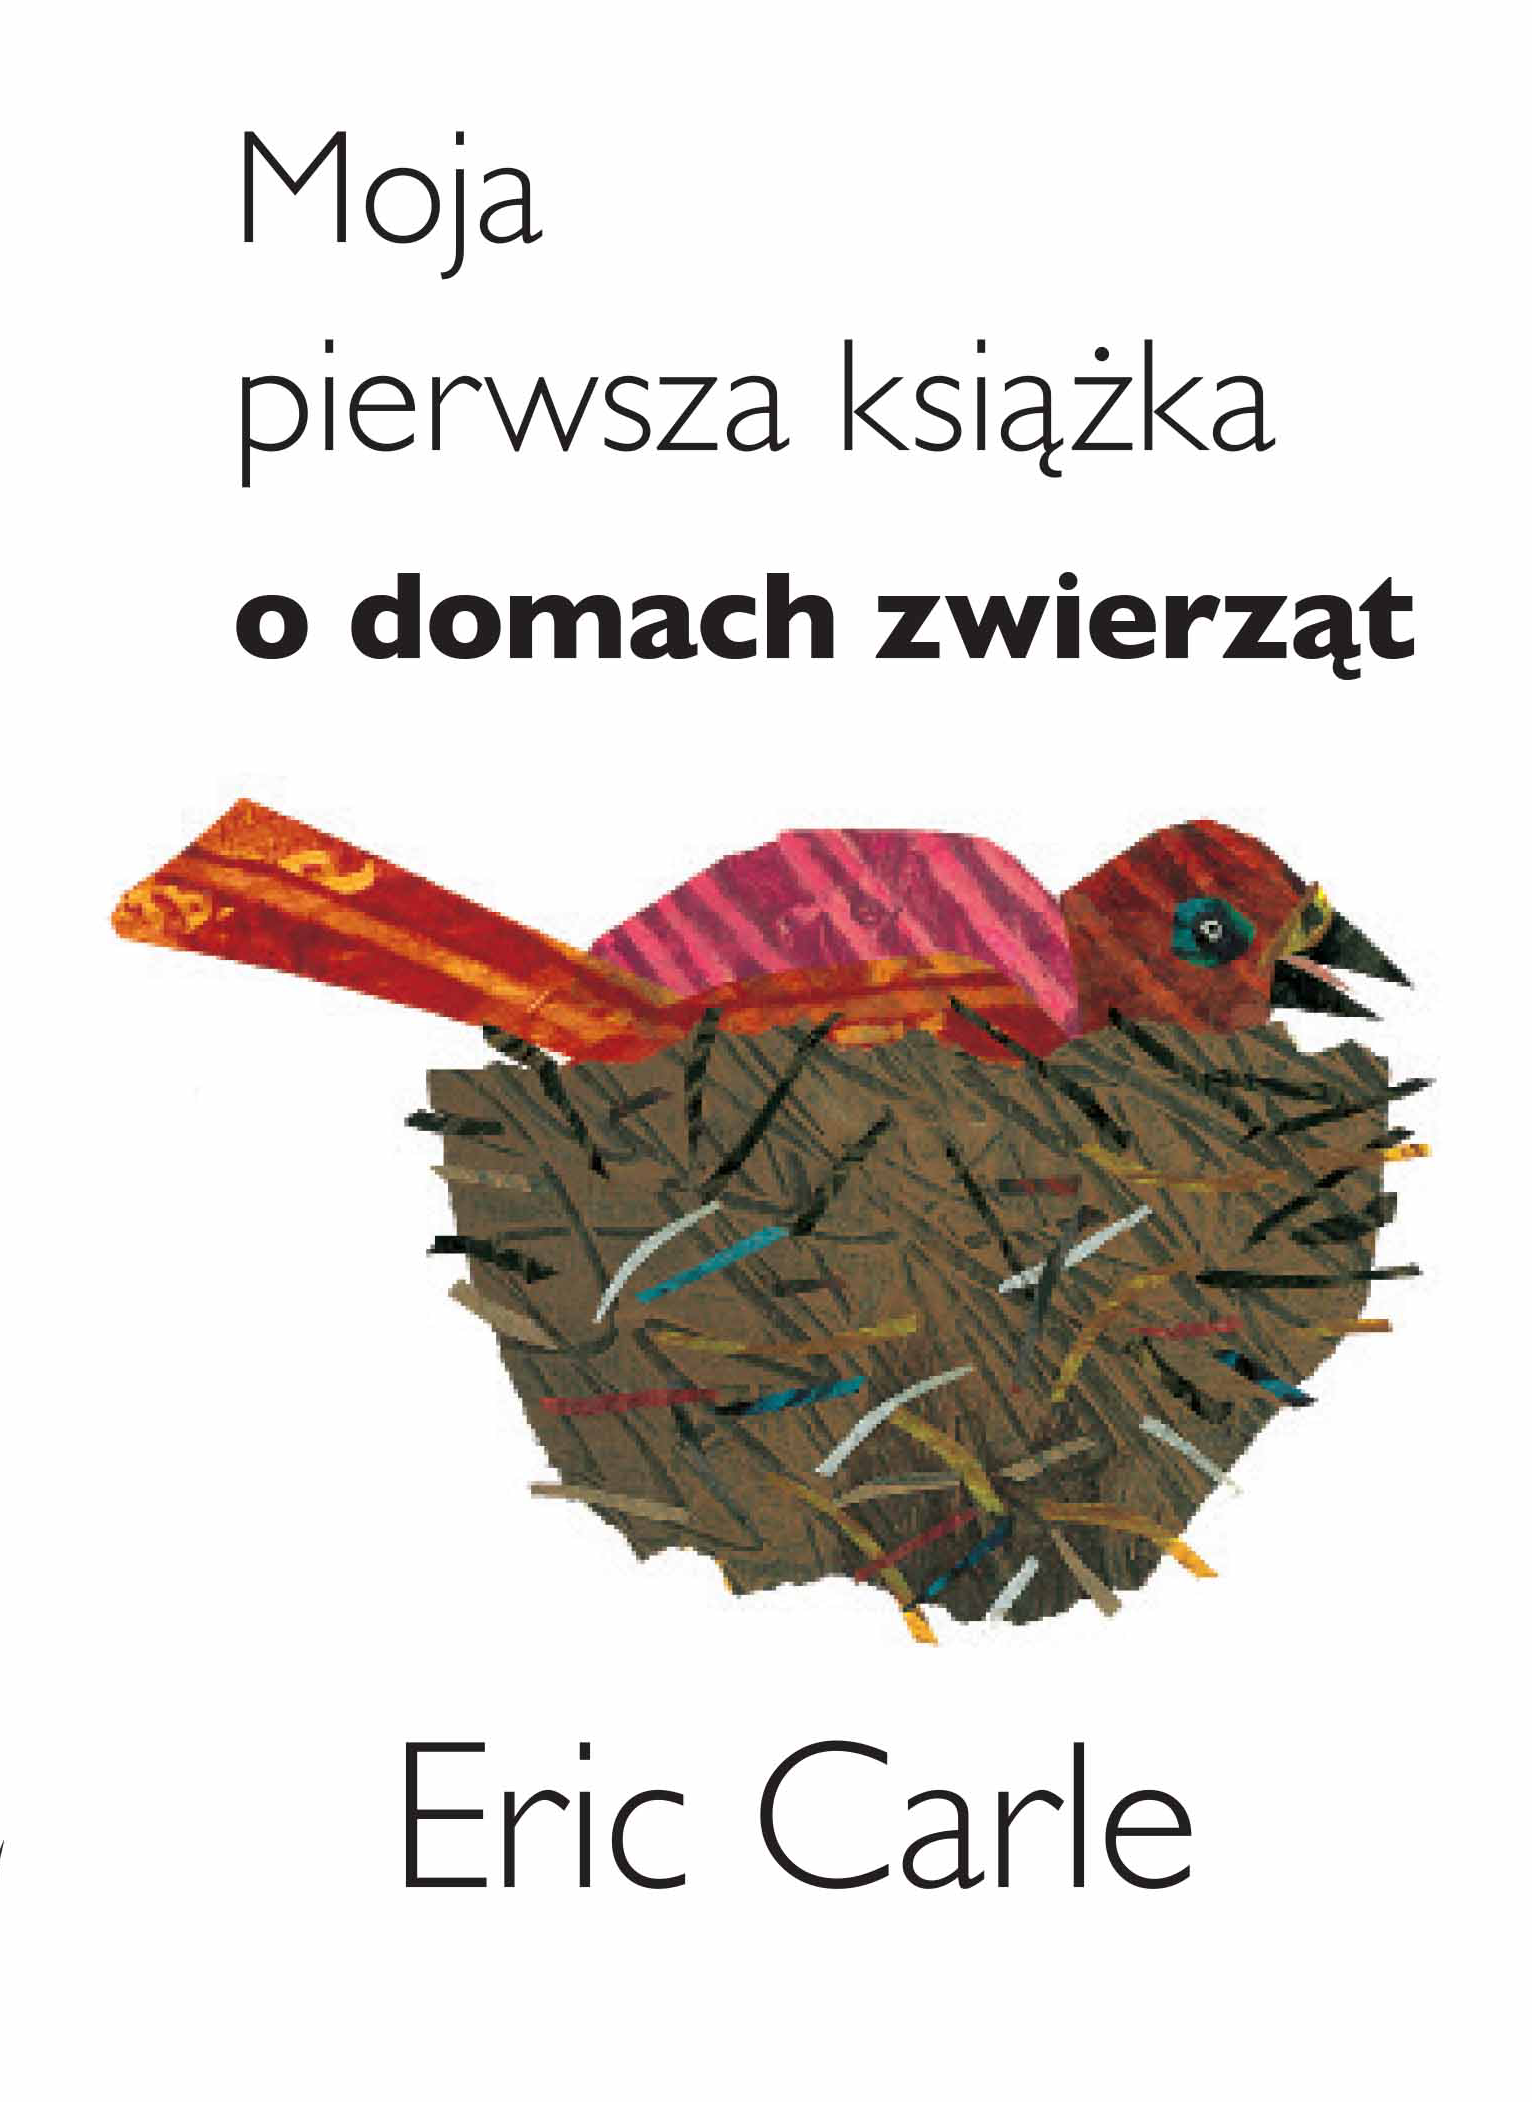 Moja pierwsza ksiazka o domach zwierzat - Eric Carle